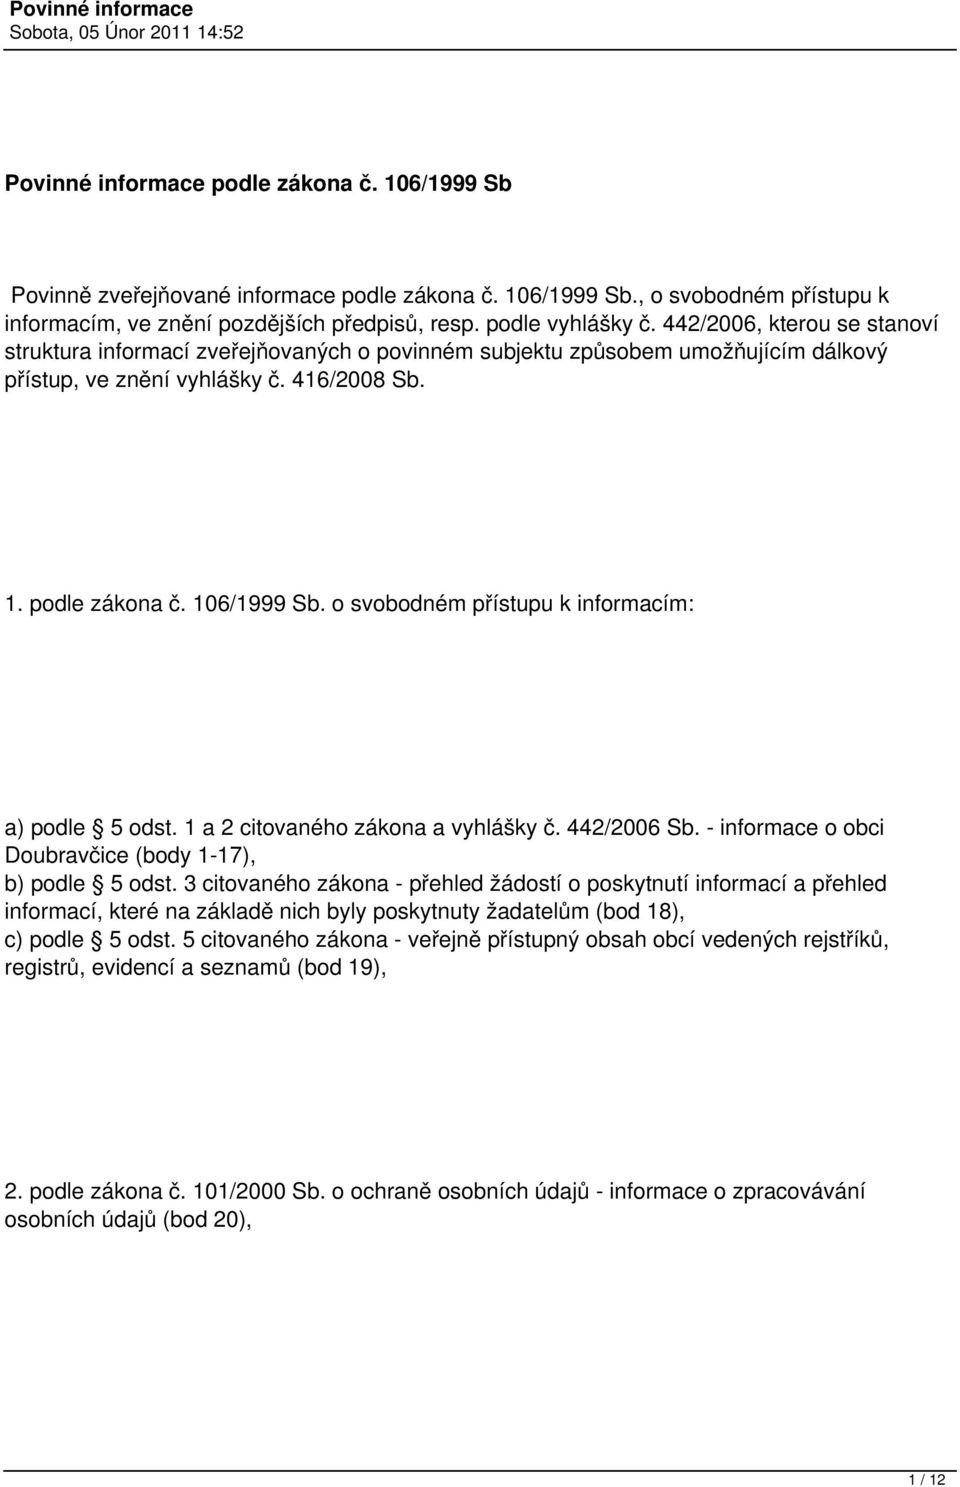 o svobodném přístupu k informacím: a) podle 5 odst. 1 a 2 citovaného zákona a vyhlášky č. 442/2006 Sb. - informace o obci Doubravčice (body 1-17), b) podle 5 odst.